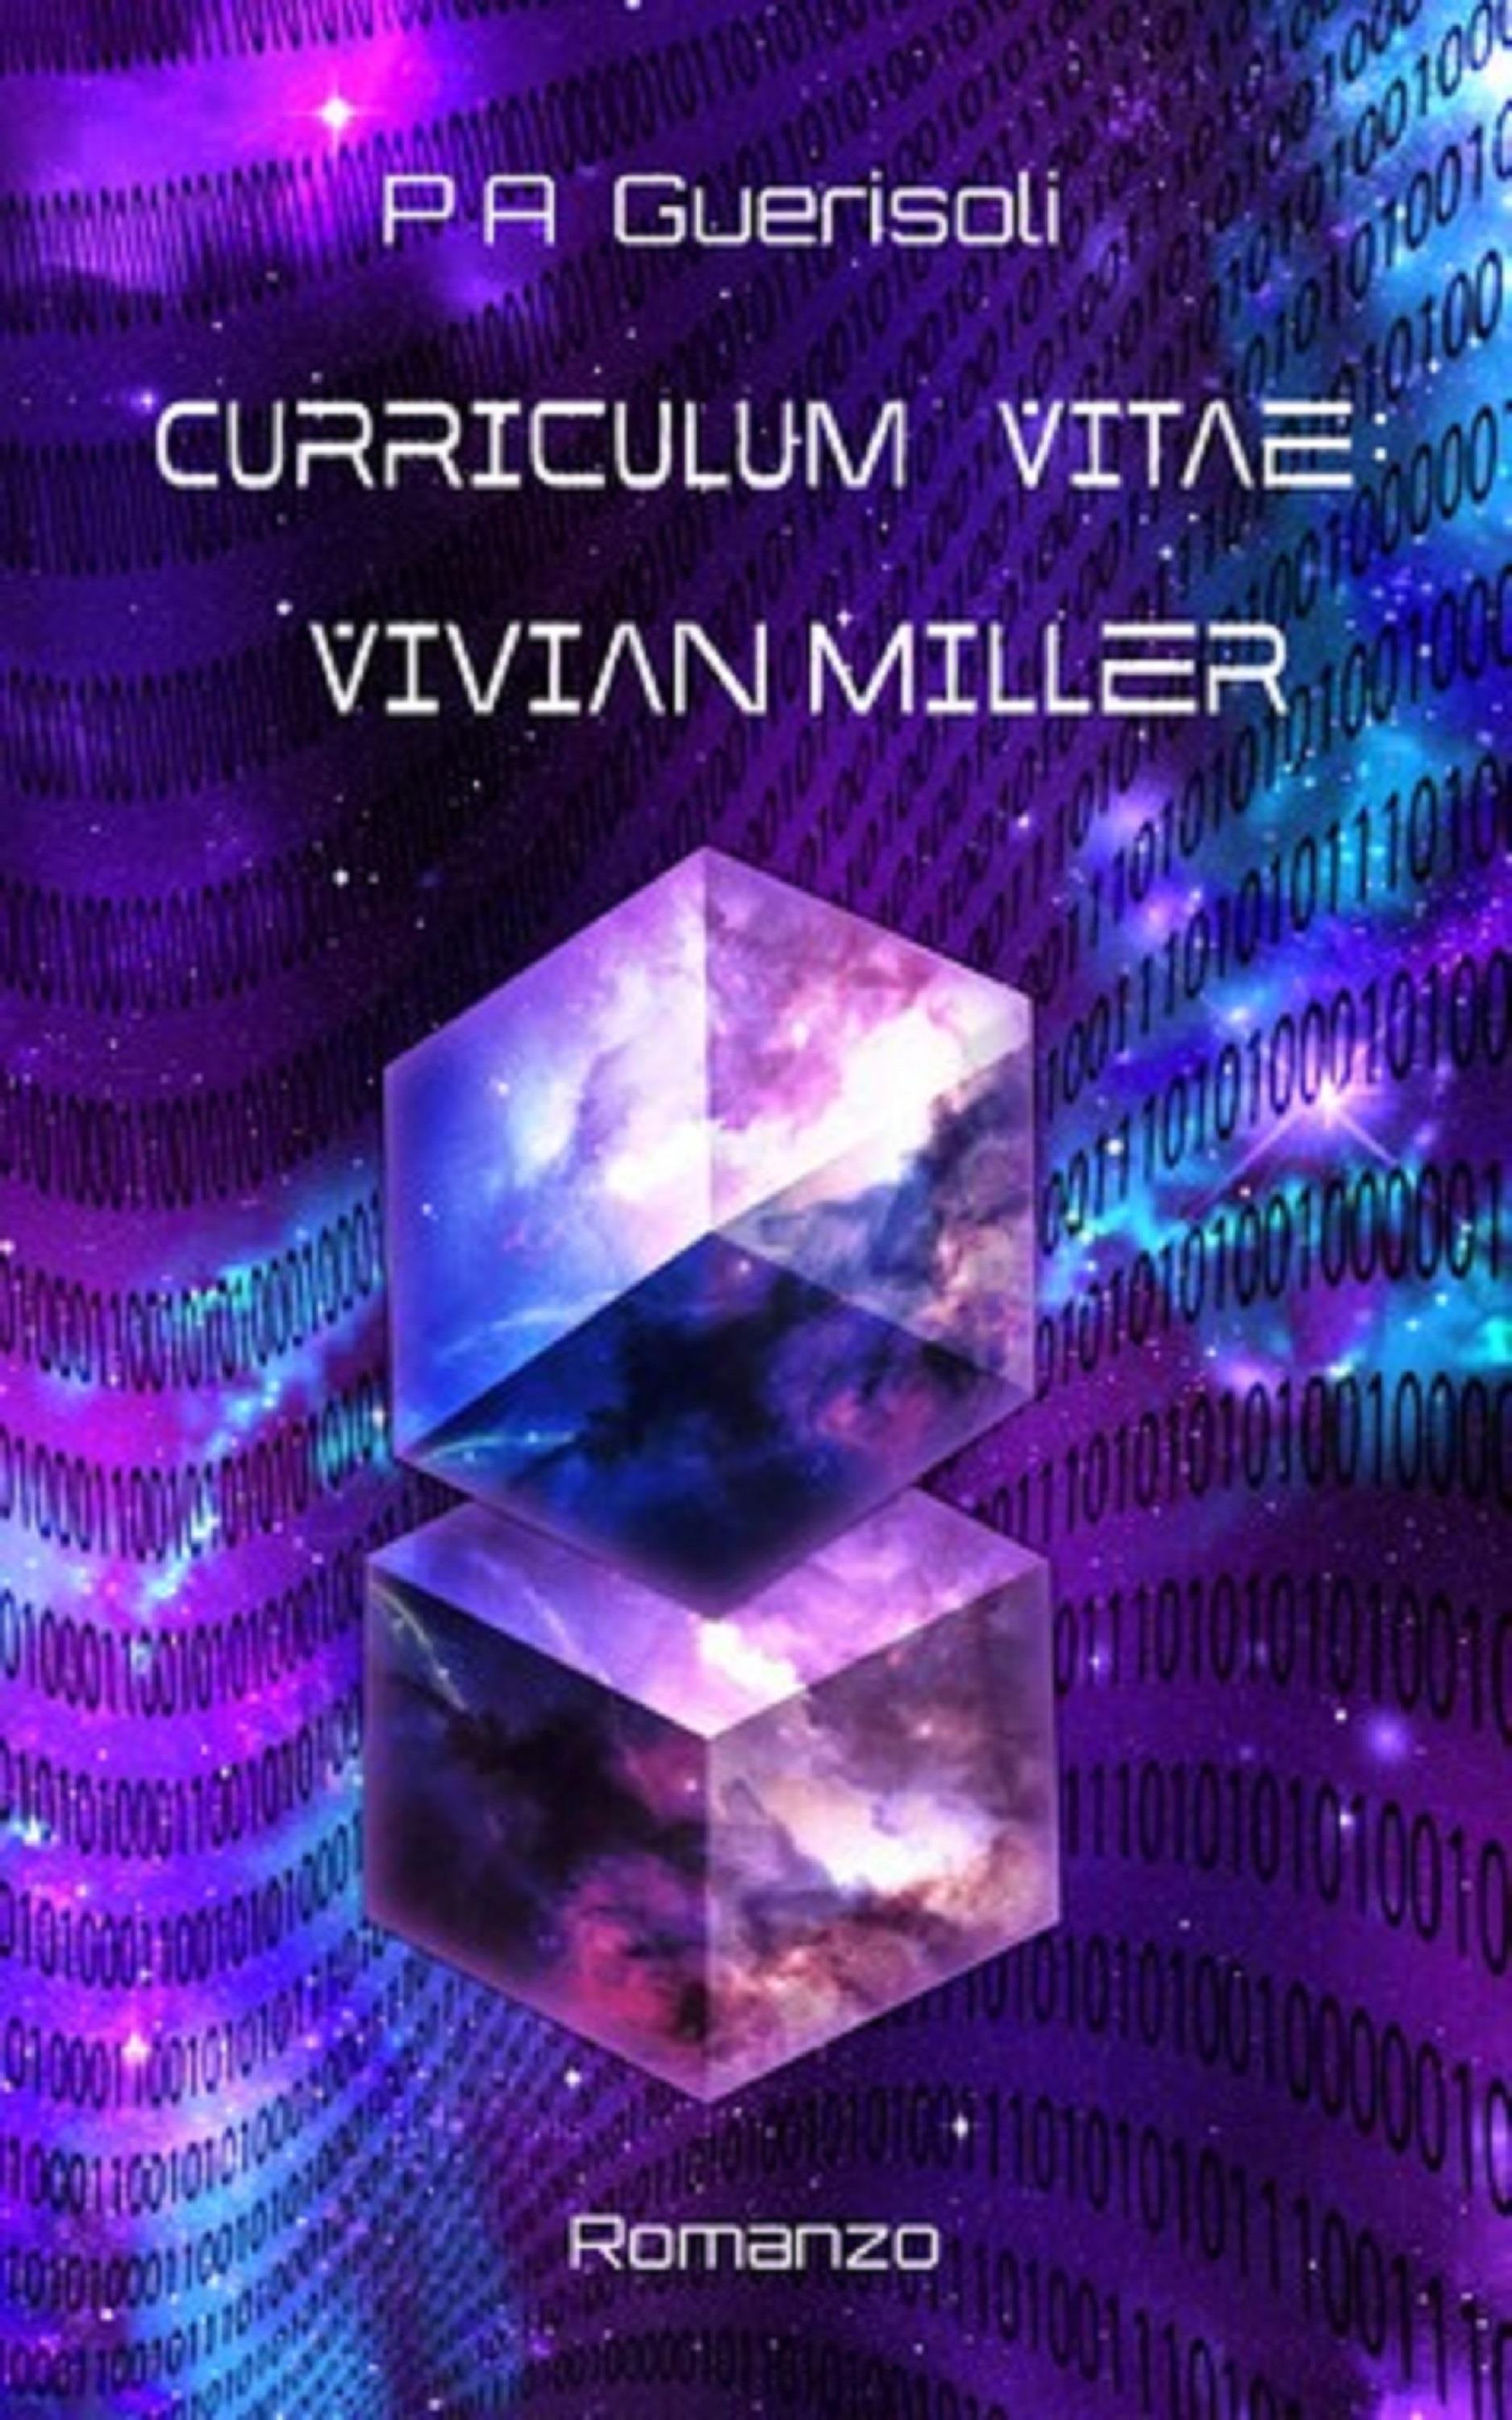 Curriculum Vitae: Vivian Miller